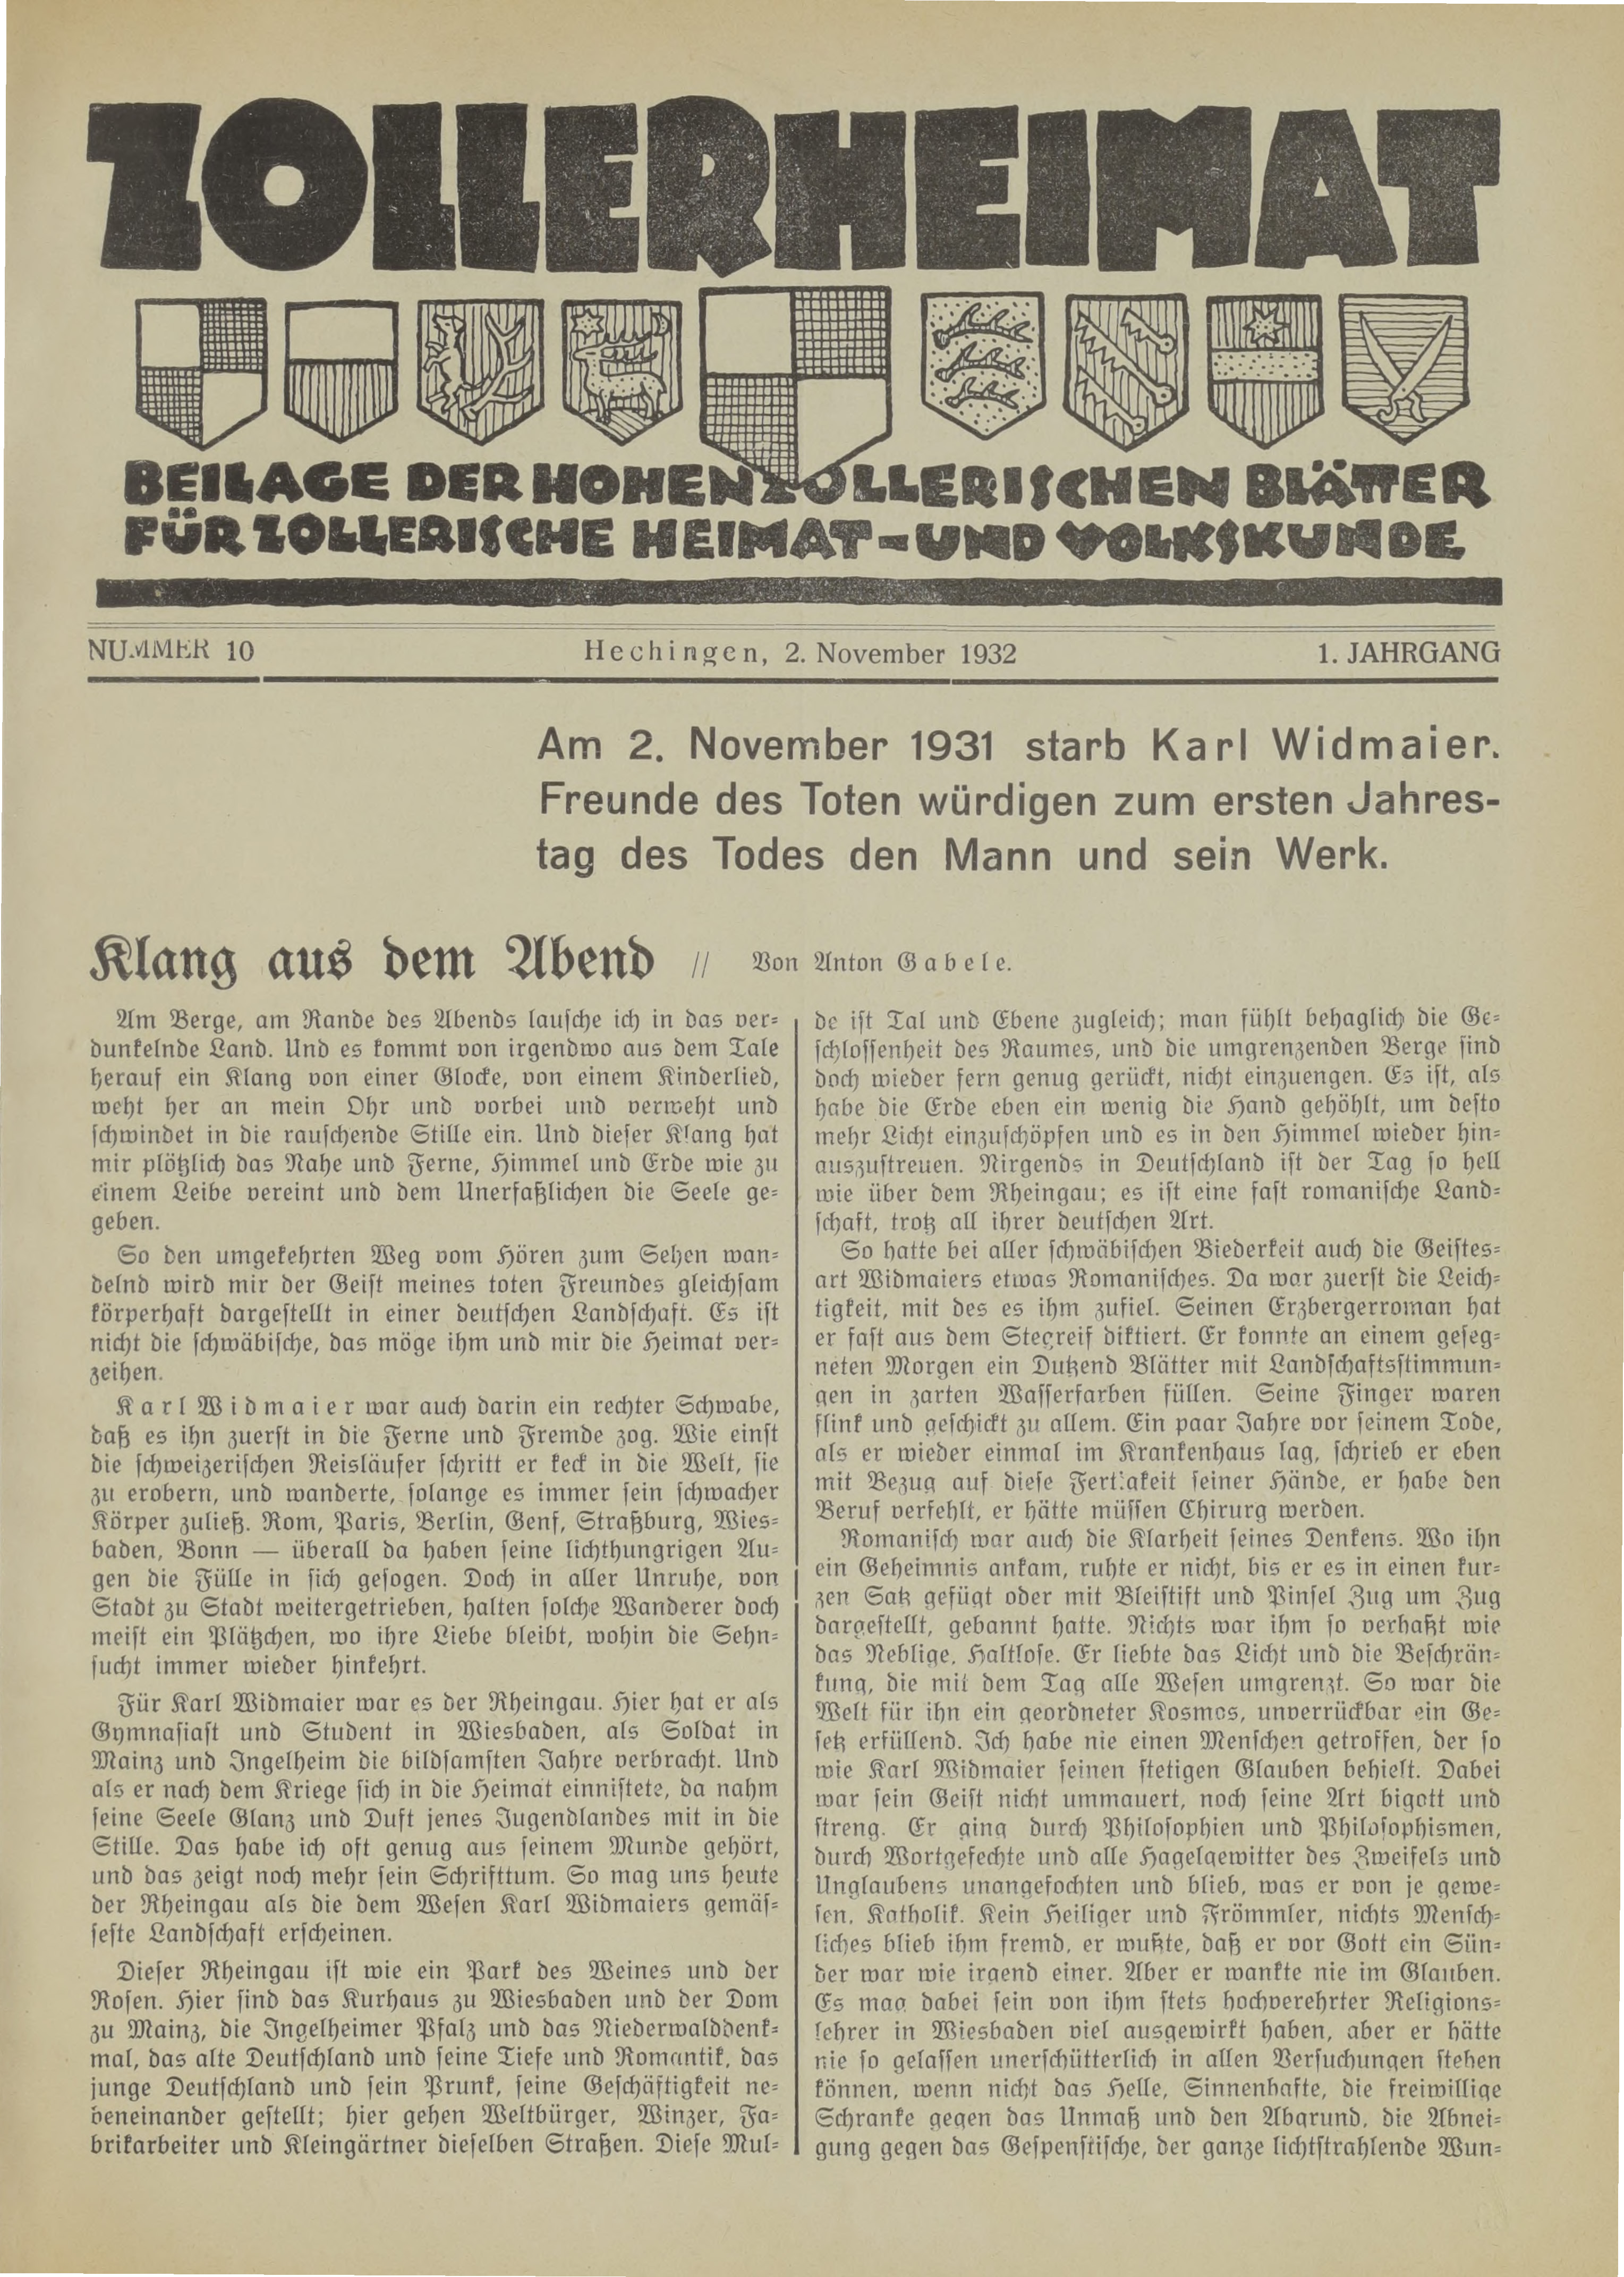                     Ansehen Bd. 1 Nr. 10 (1932): Zollerheimat
                